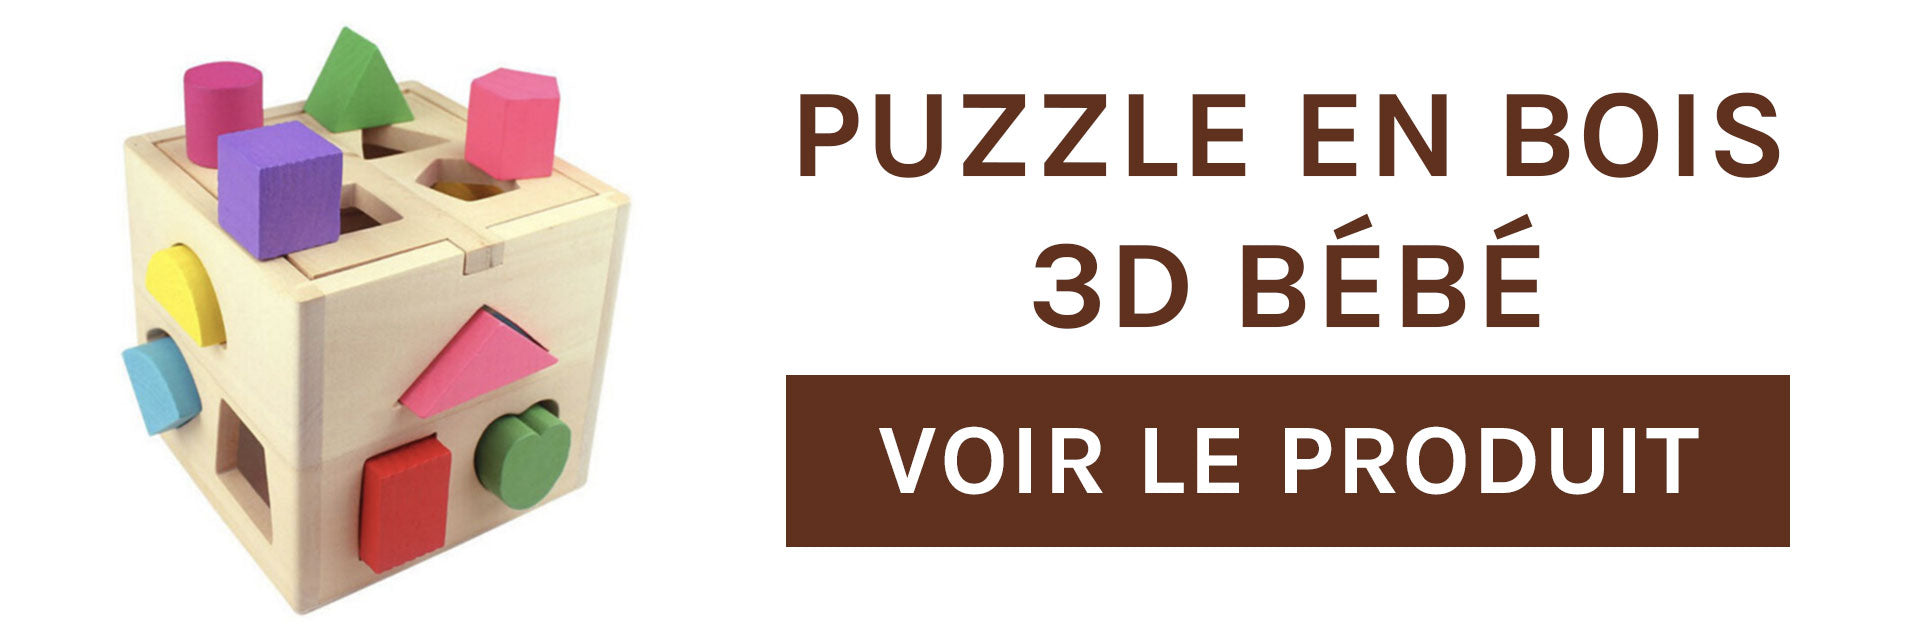 puzzle-en-bois-3d-bebe